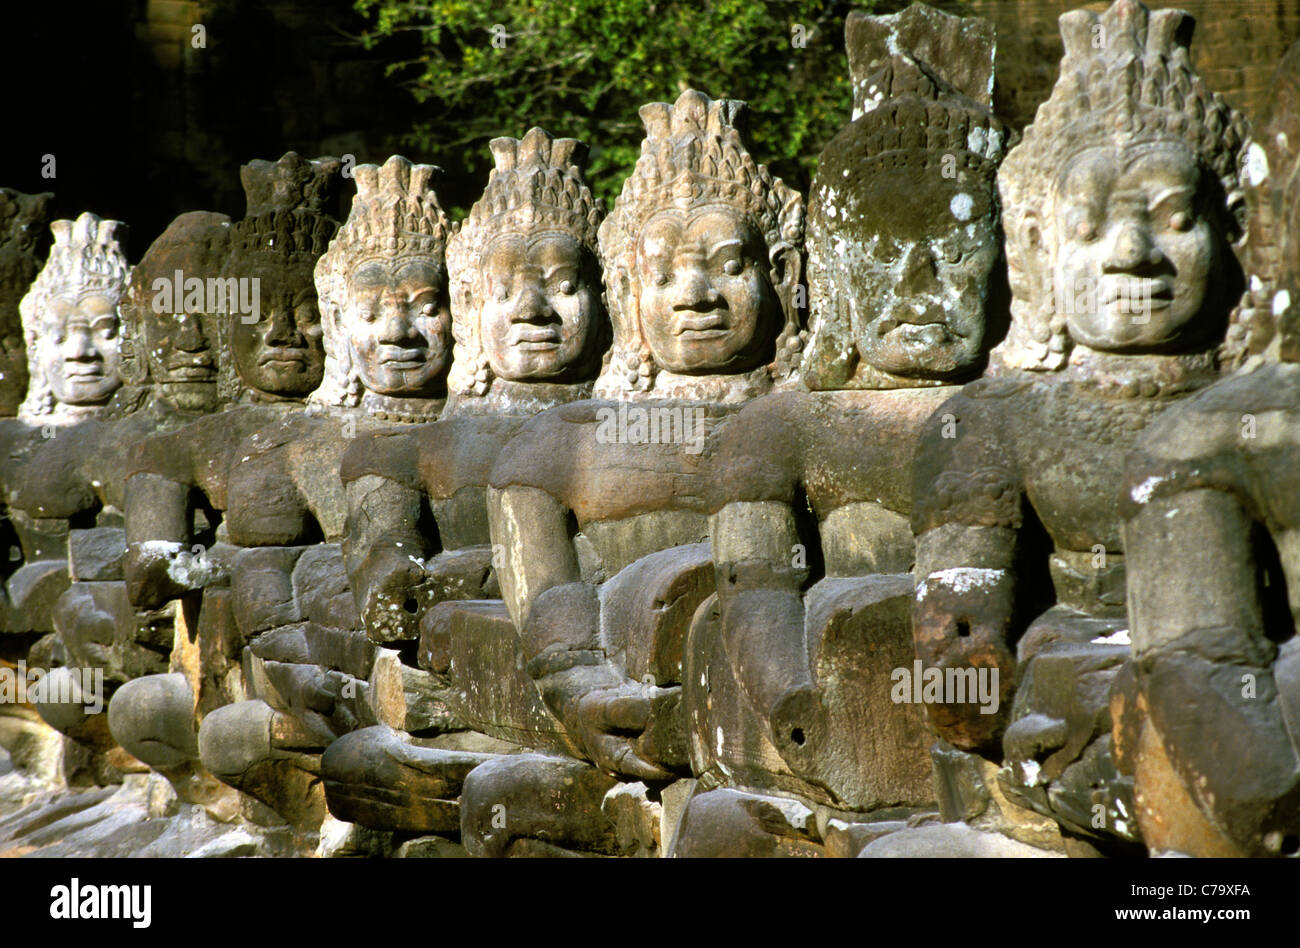 Balustrades approaching the city wall of Angkor Thom, Angkor Wat, Cambodia Stock Photo